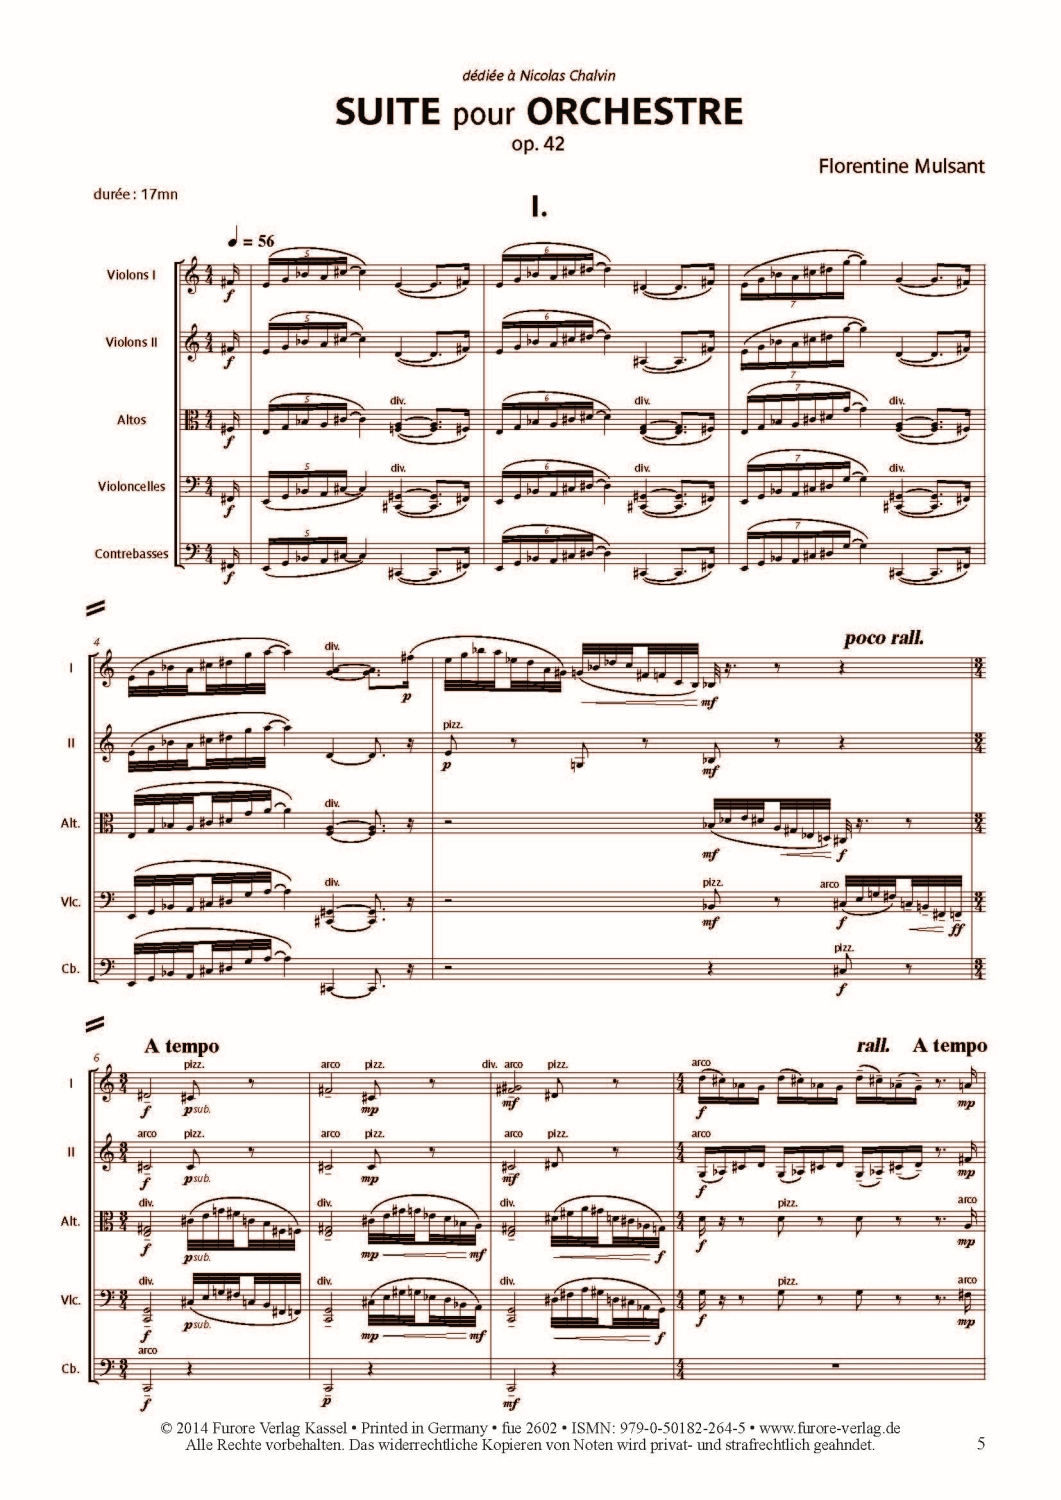 florentine-mulsant-suite-op-42-strorch-_partitur_-_0006.JPG